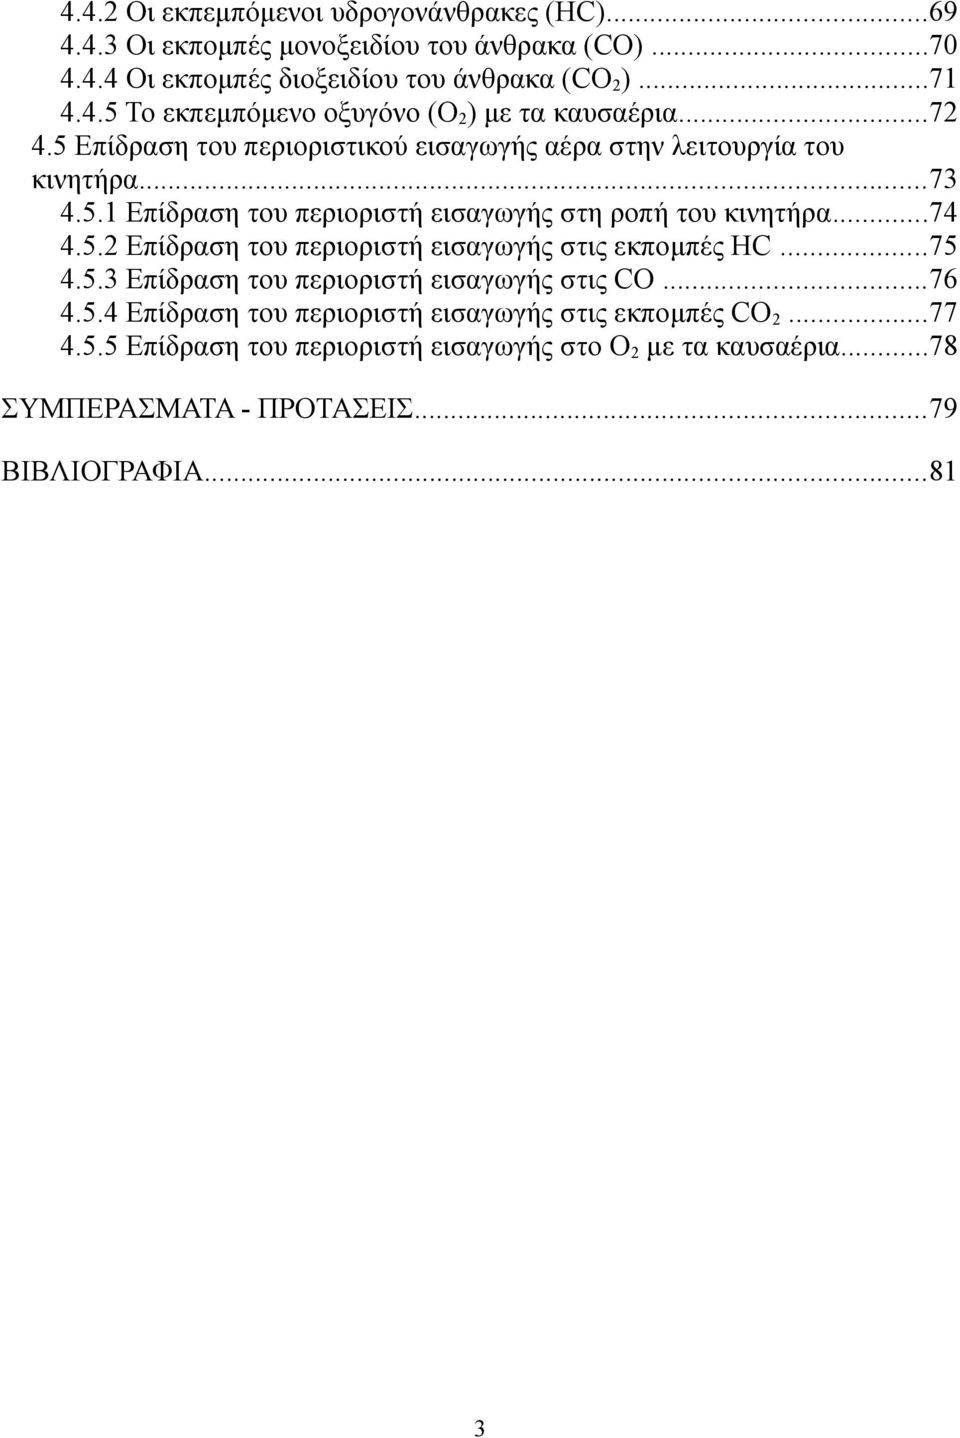 ..75 4.5.3 Επίδραση του περιοριστή εισαγωγής στις CO...76 4.5.4 Επίδραση του περιοριστή εισαγωγής στις εκπομπές CO2...77 4.5.5 Επίδραση του περιοριστή εισαγωγής στο Ο2 με τα καυσαέρια.